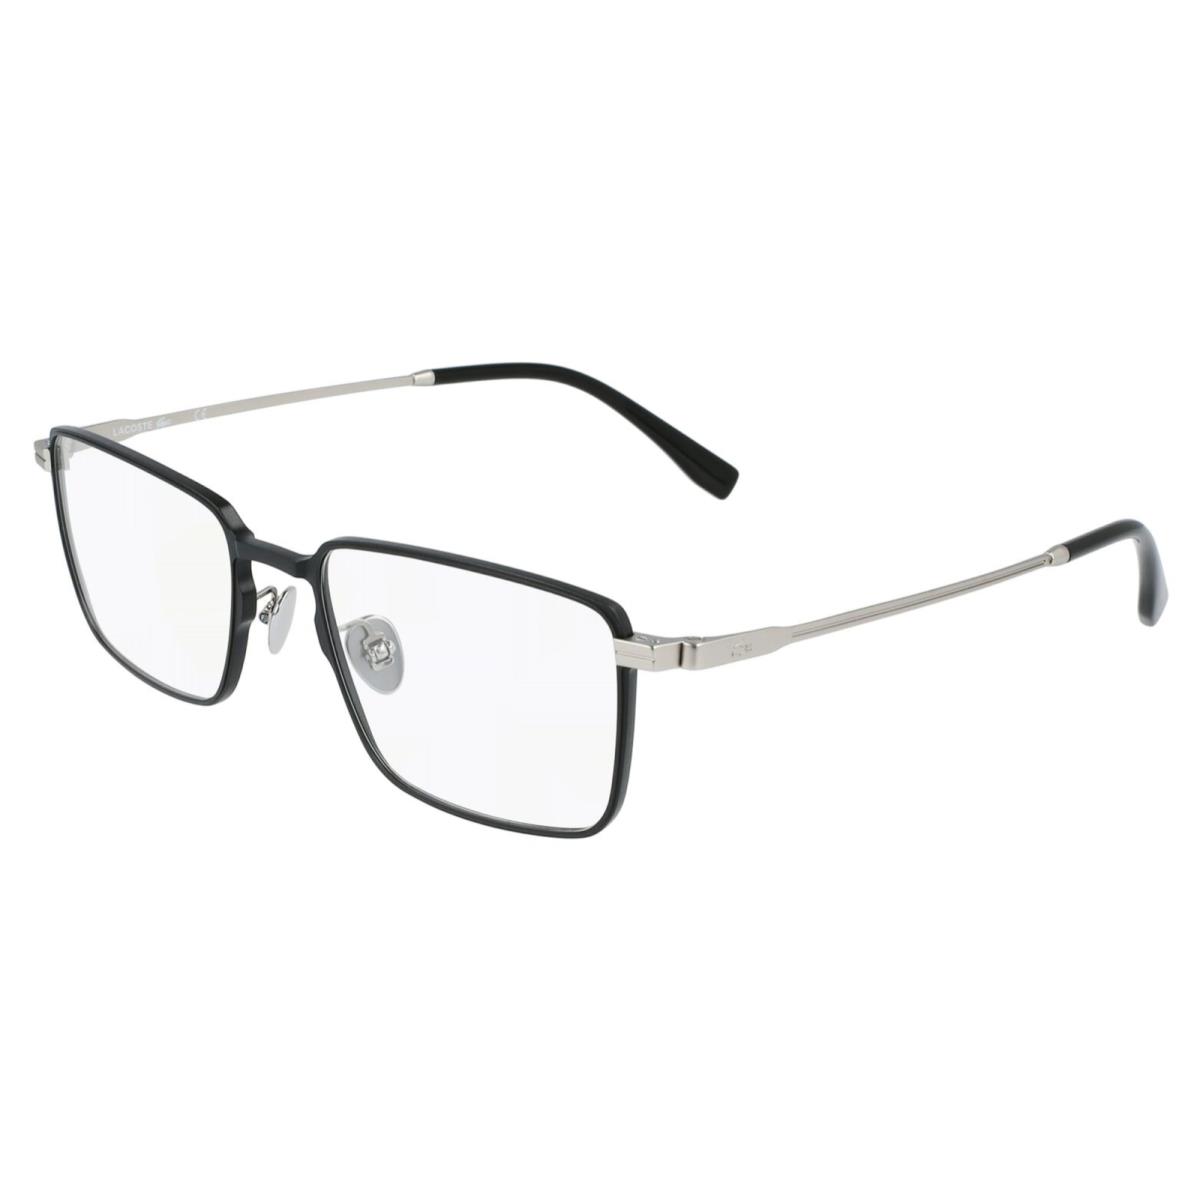 Lacoste Rx-able Eyeglasses L2275E 001 54-19 145 Matte Black Silver Frames - Frame: Matte Black & Matte Silver, Lens: